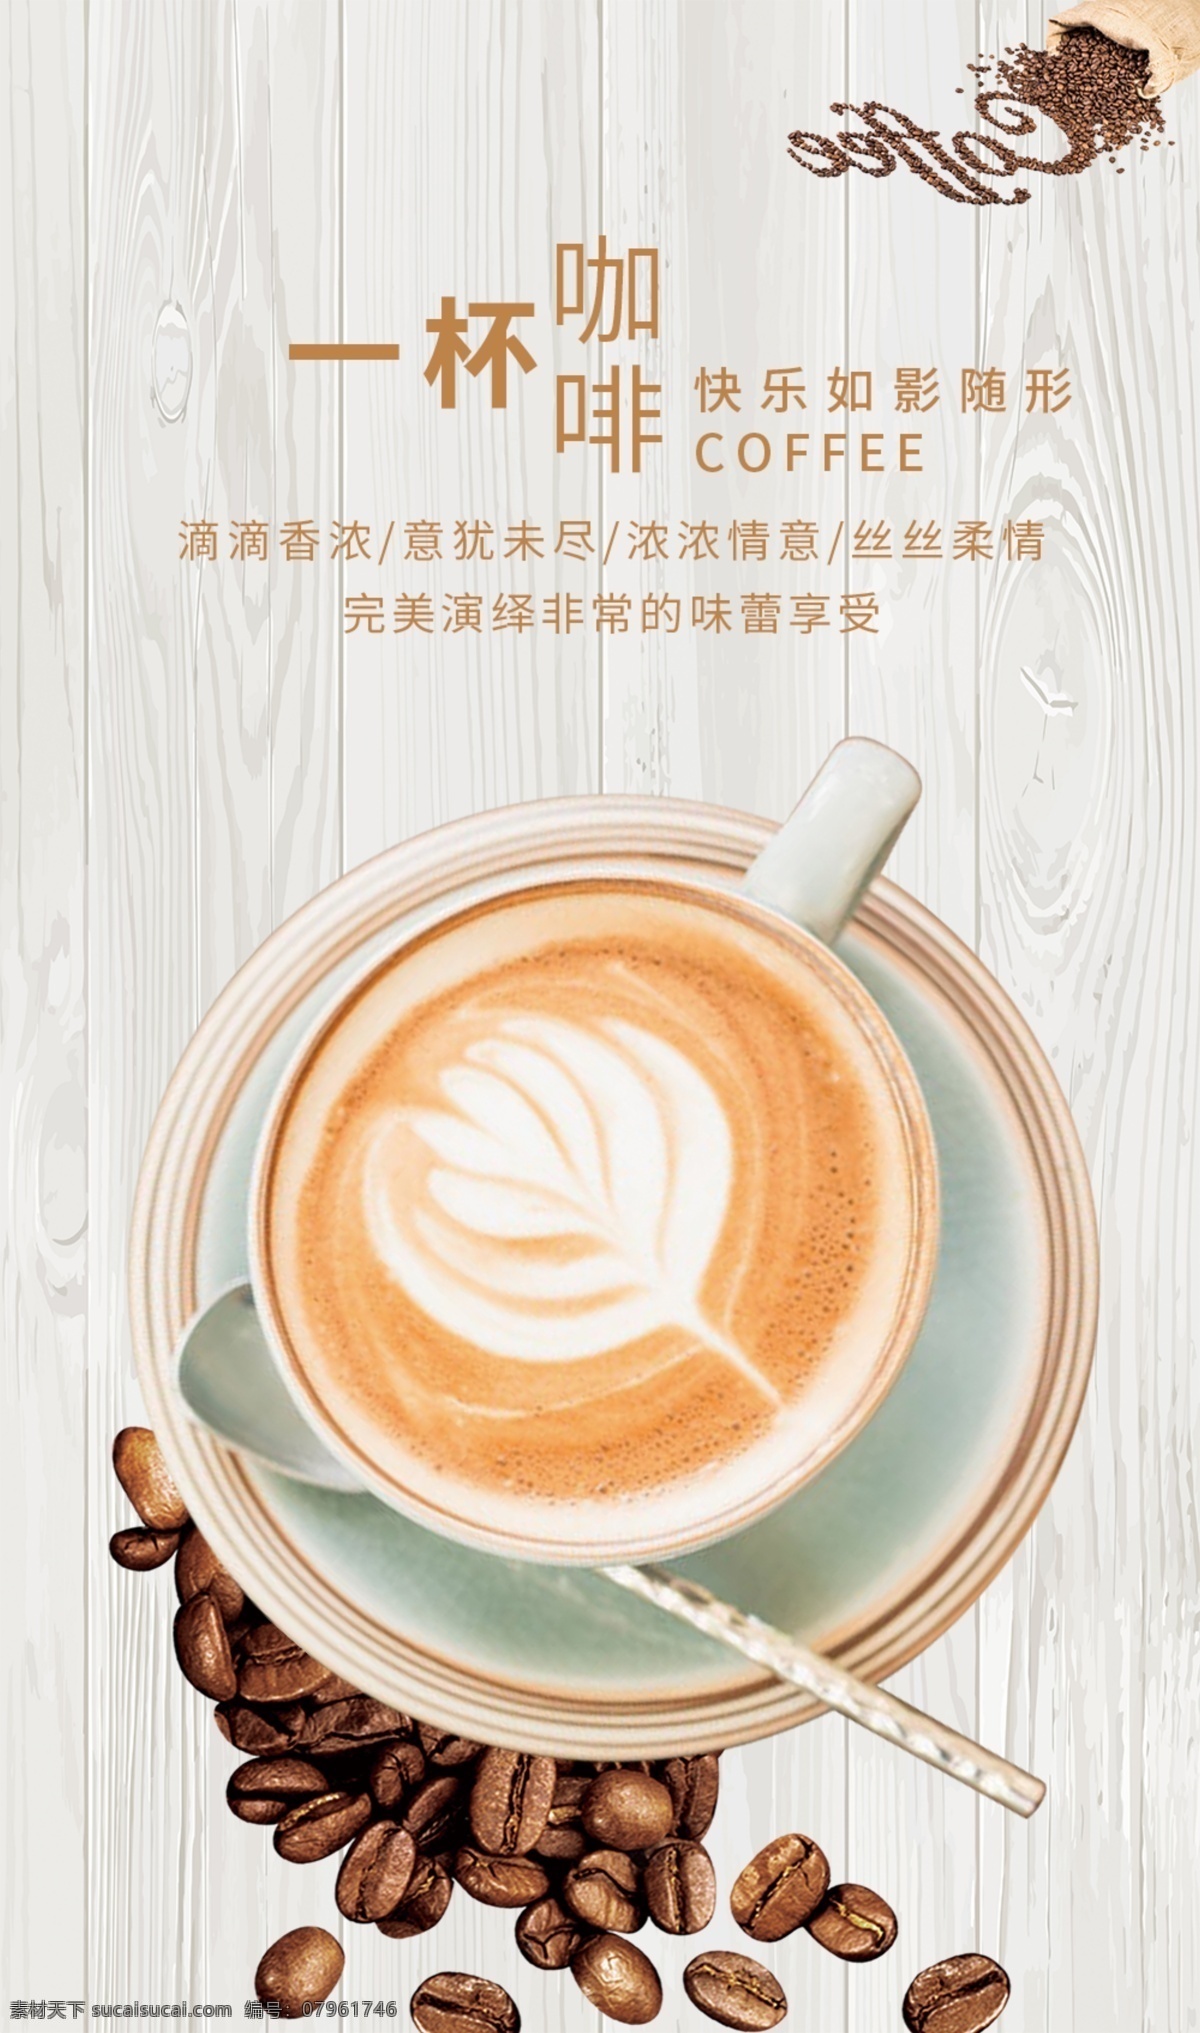 咖啡宣传海报 咖啡 海报 宣传海报 简约 文艺 生活百科 餐饮美食